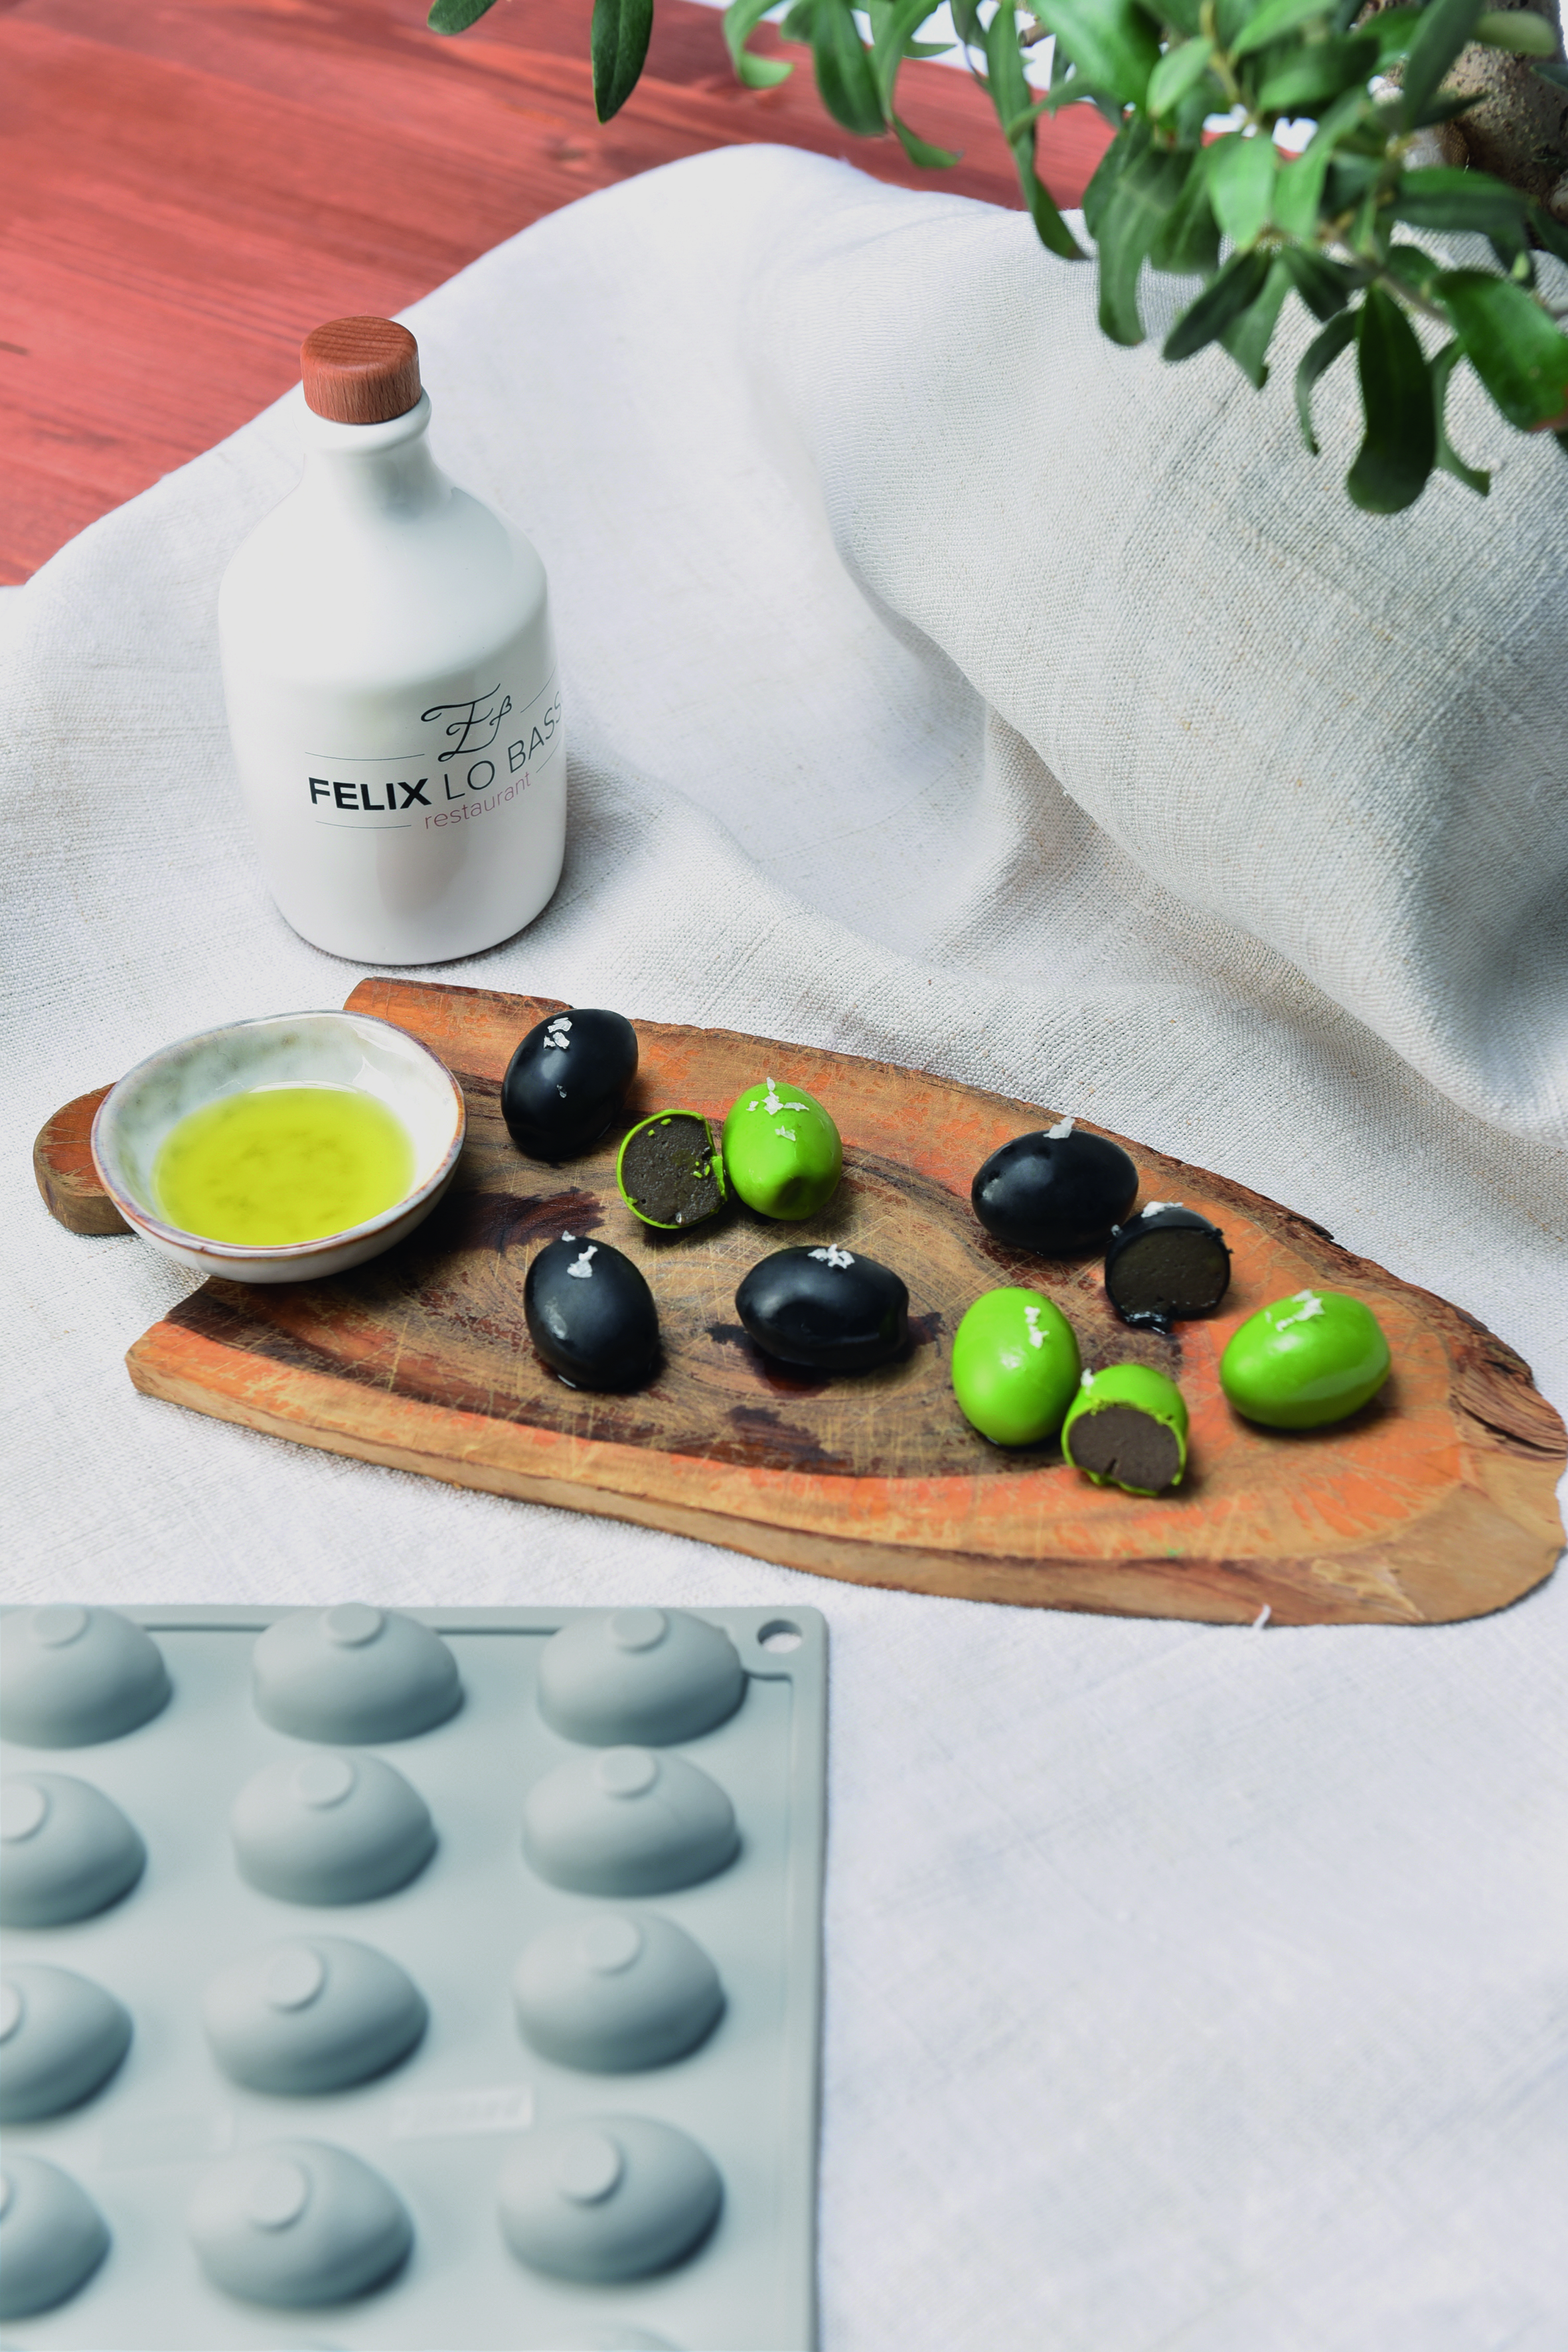 Holzbrettchen mit grünen und schwarzen Oliven und kleinem Schälchen mit Olivenöl auf weißer Tischdecke, Silikonform Oliven unten rechts davor